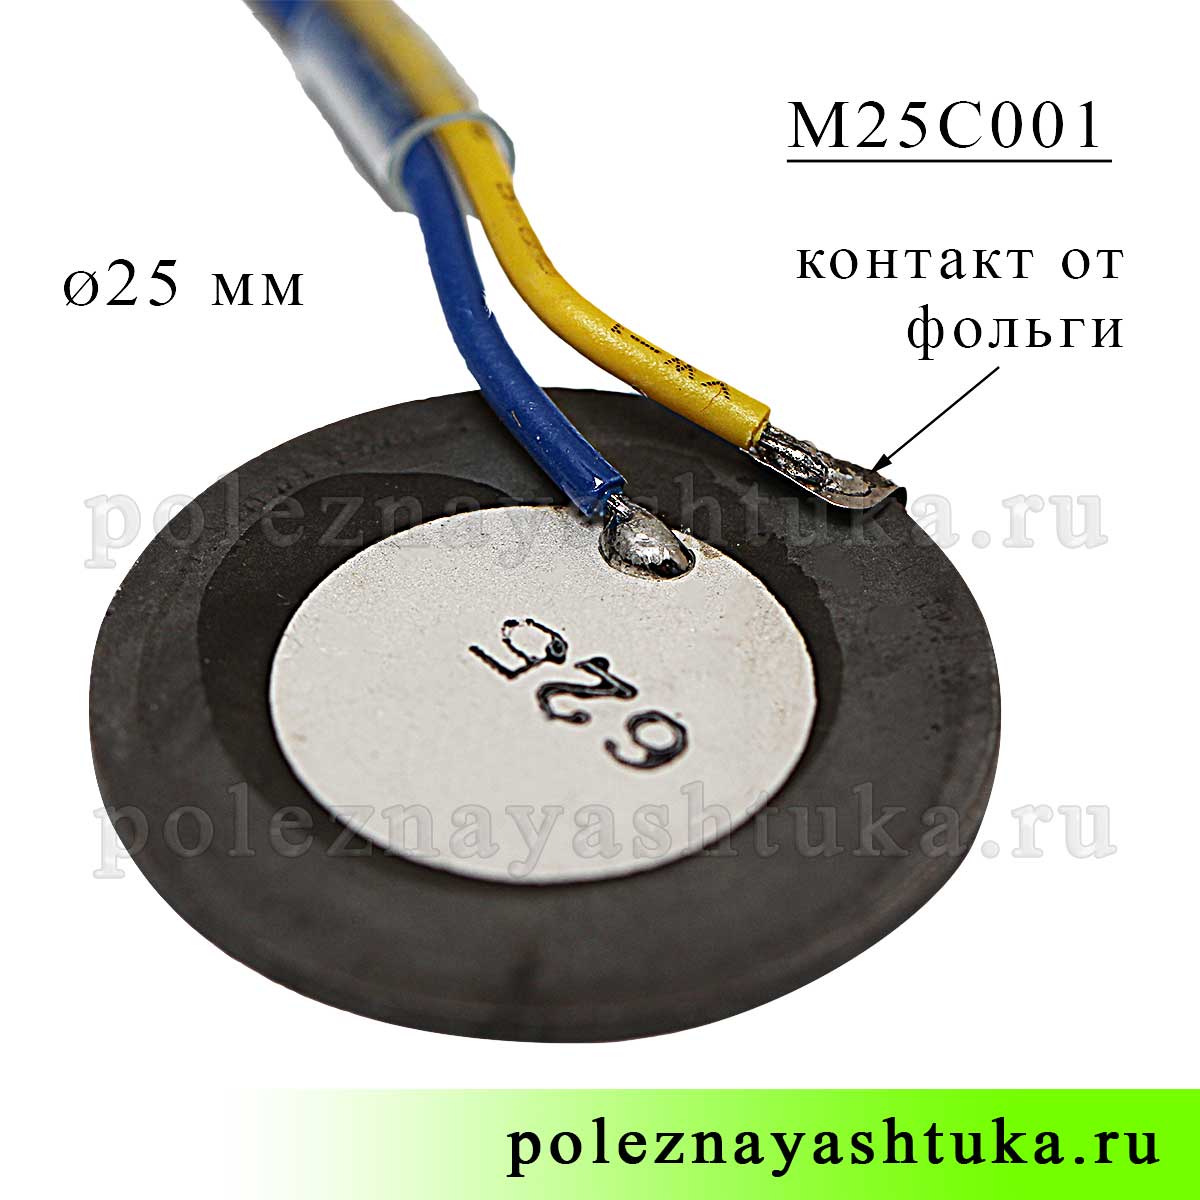 Ультразвуковой пьезоэлемент для увлажнителя воздуха, 25 мм диаметр, фольгированный, с проводами